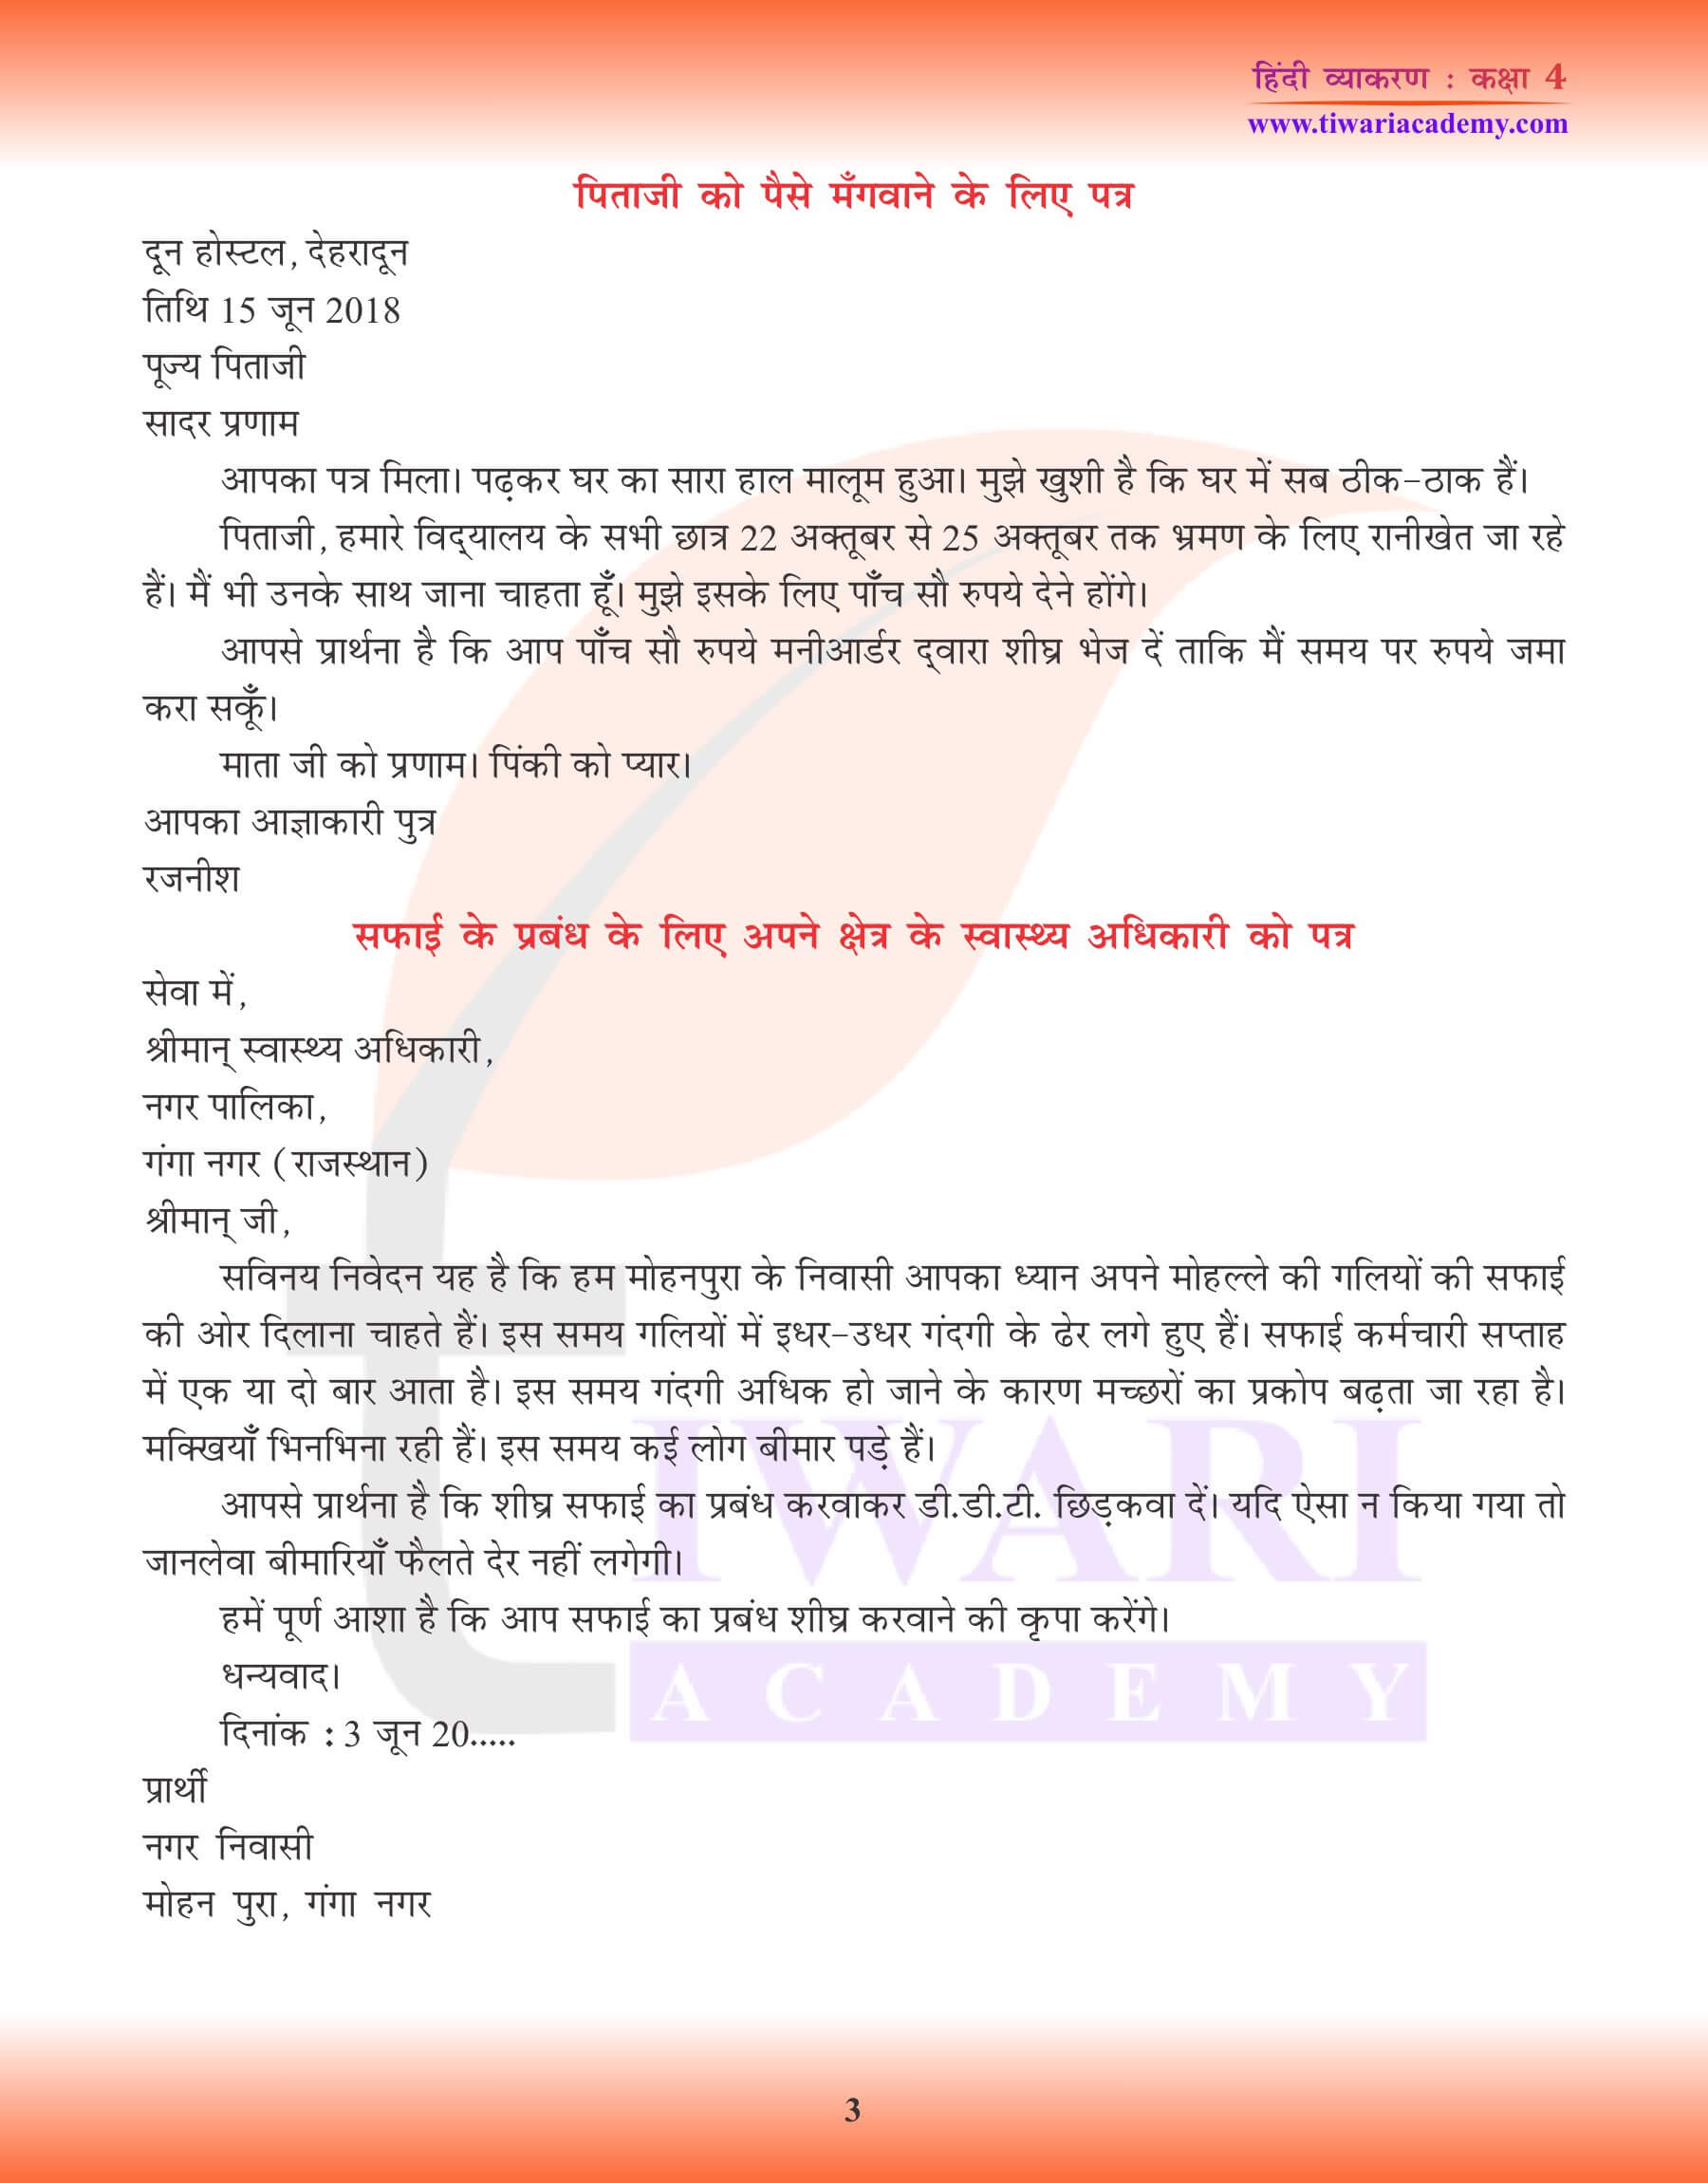 कक्षा 4 हिंदी व्याकरण में पत्र लेखन के उदाहरण